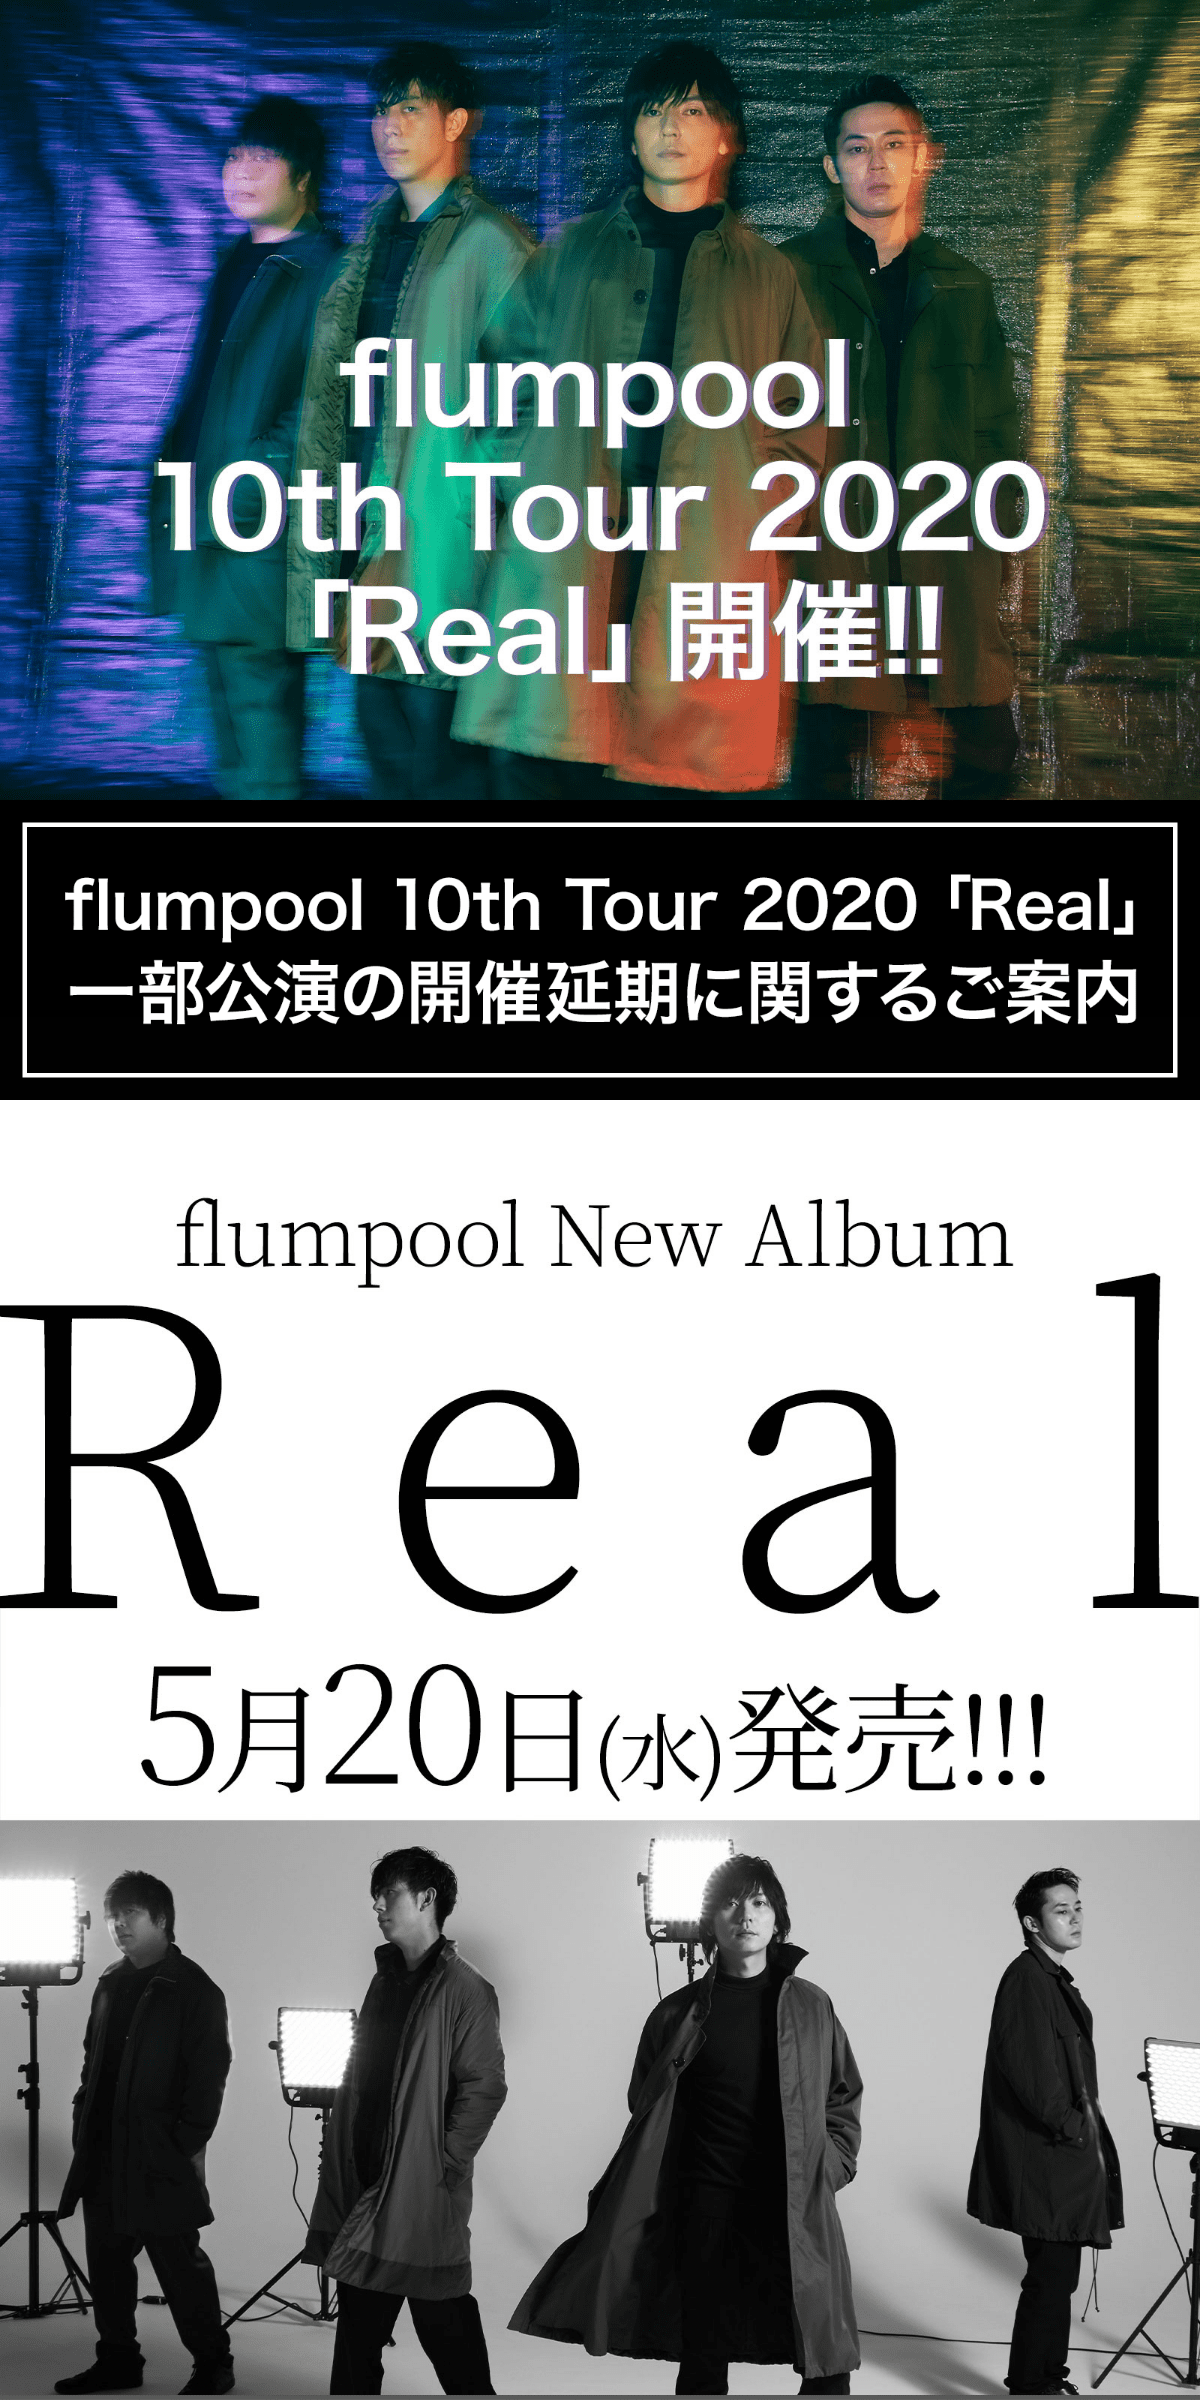 A complete backup of flumpool.jp